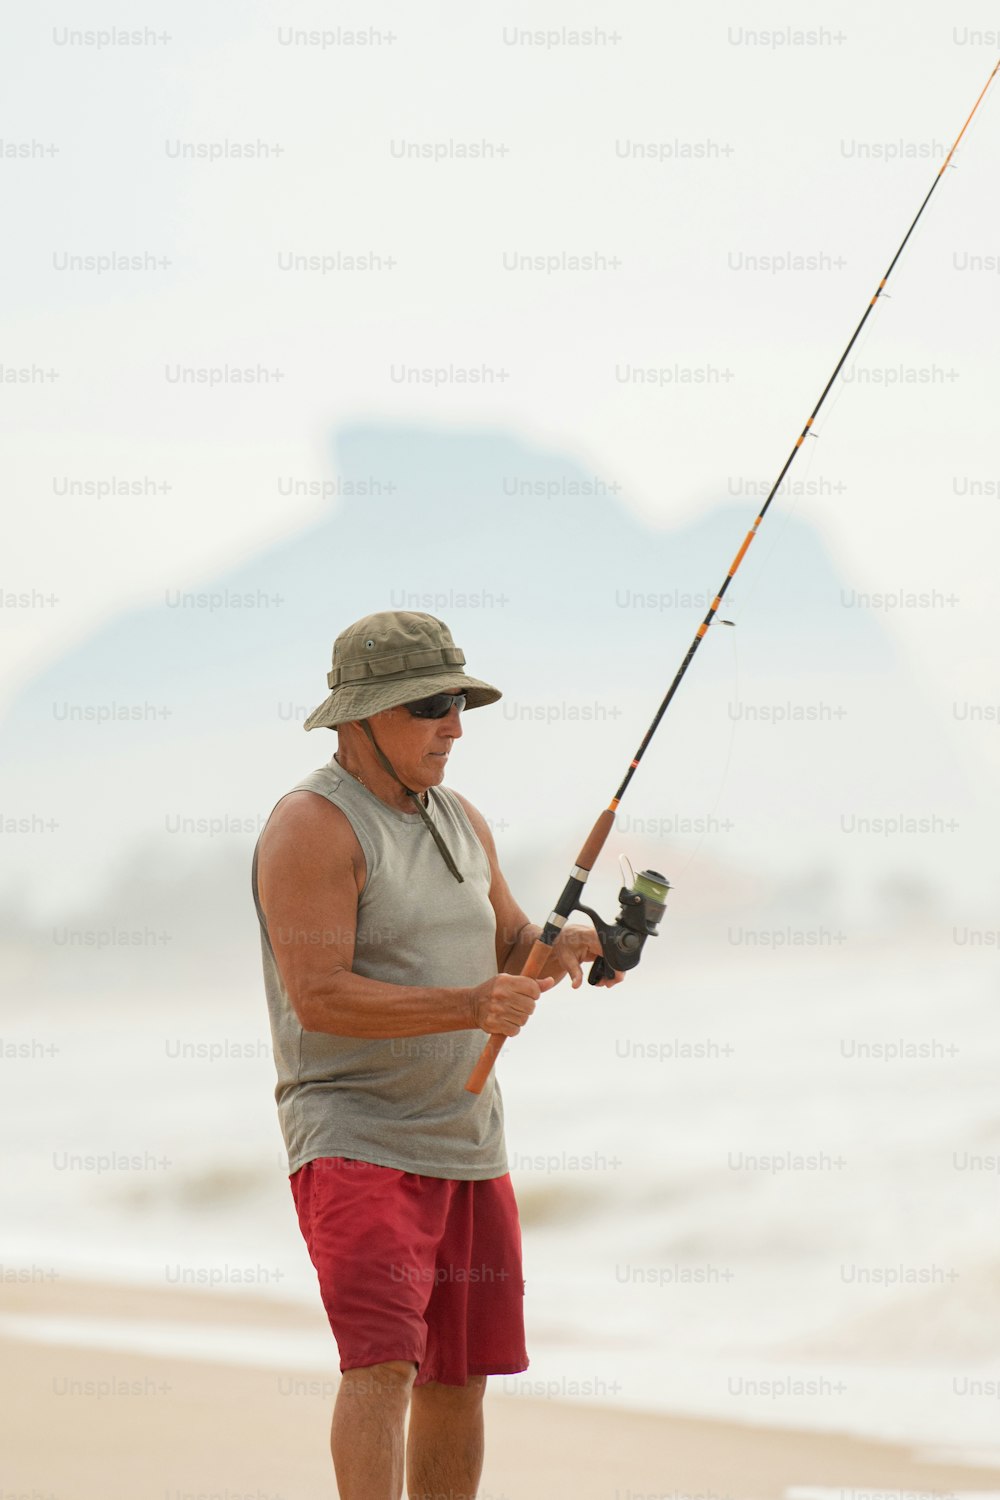 Un hombre parado en una playa mientras sostiene una caña de pescar